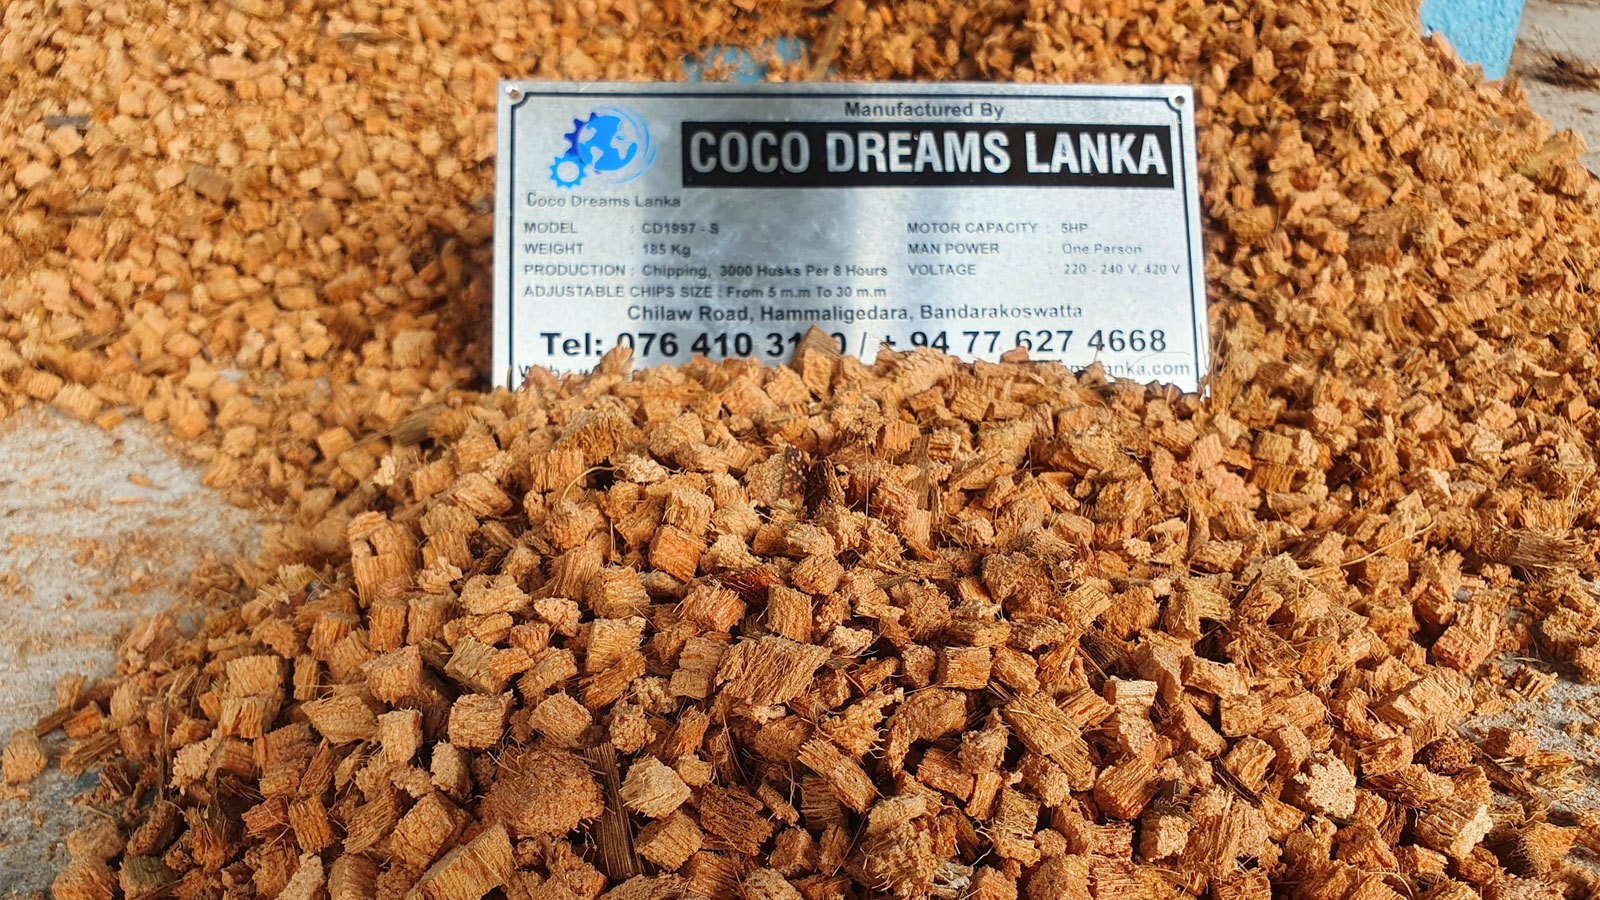 COCO DREAMS LANKA